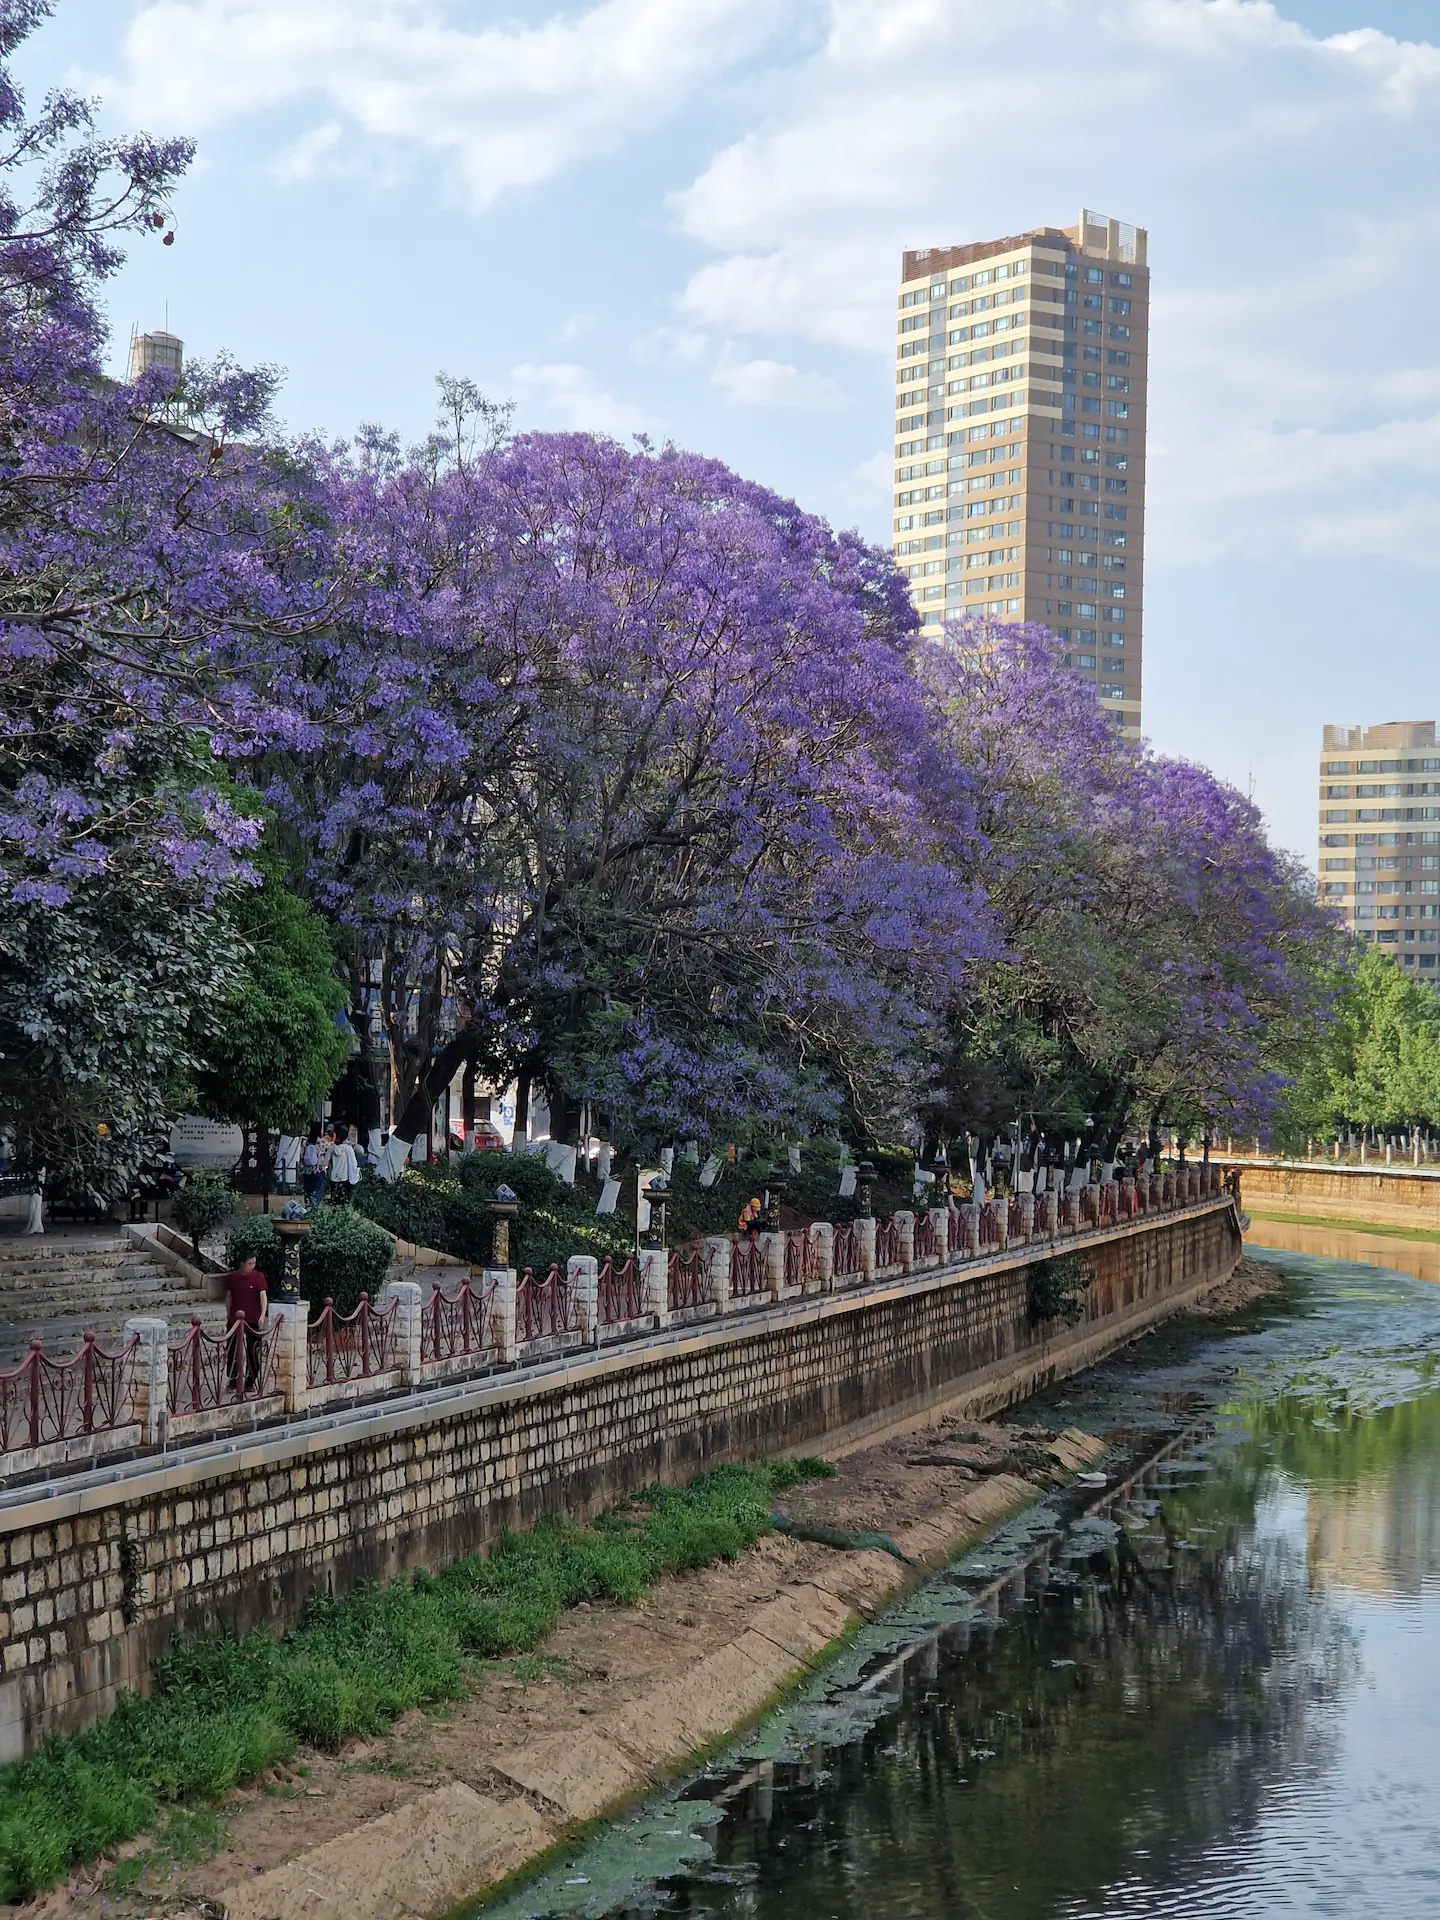 Des arbres aux fleurs violettes poussent le long du canal. Un bâtiment s'élève jusqu'au ciel en fond.